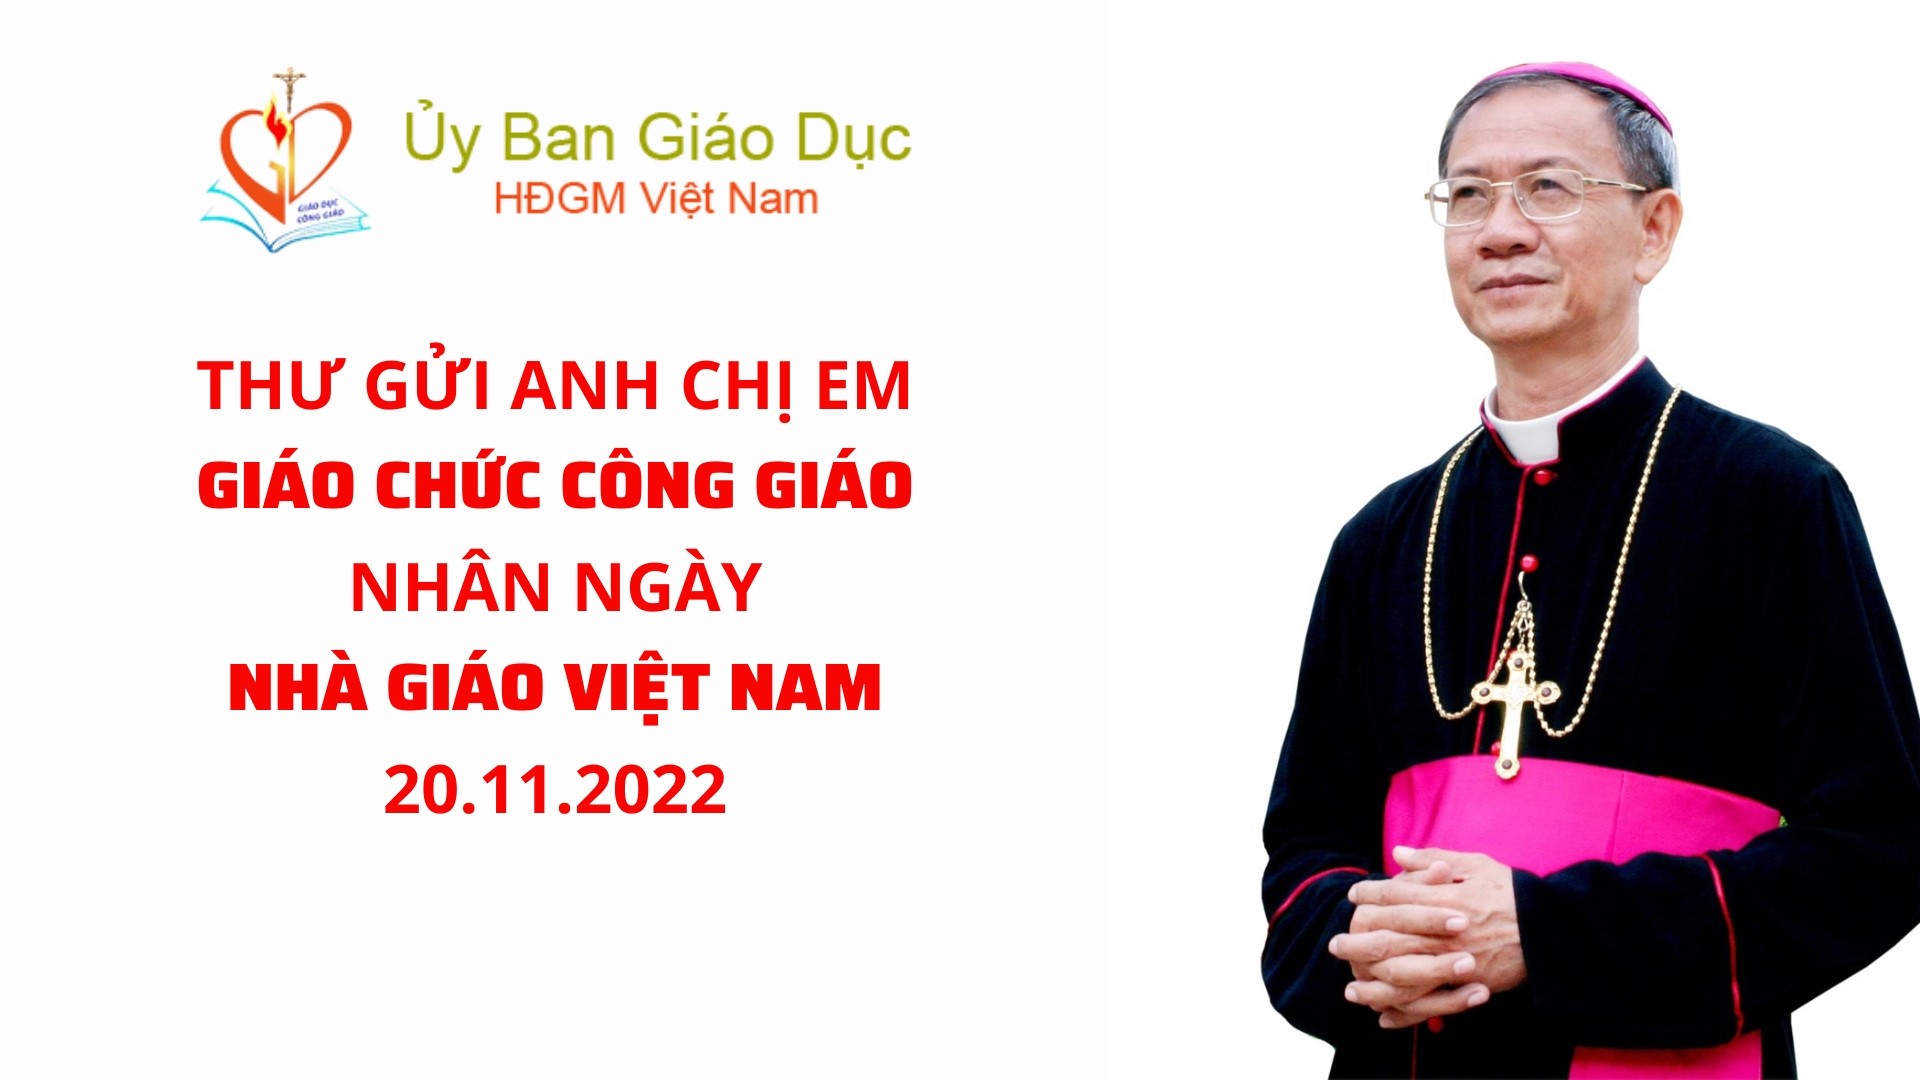 Thư gửi anh chị em giáo chức Công giáo nhân ngày Nhà giáo Việt Nam 20.11.2022